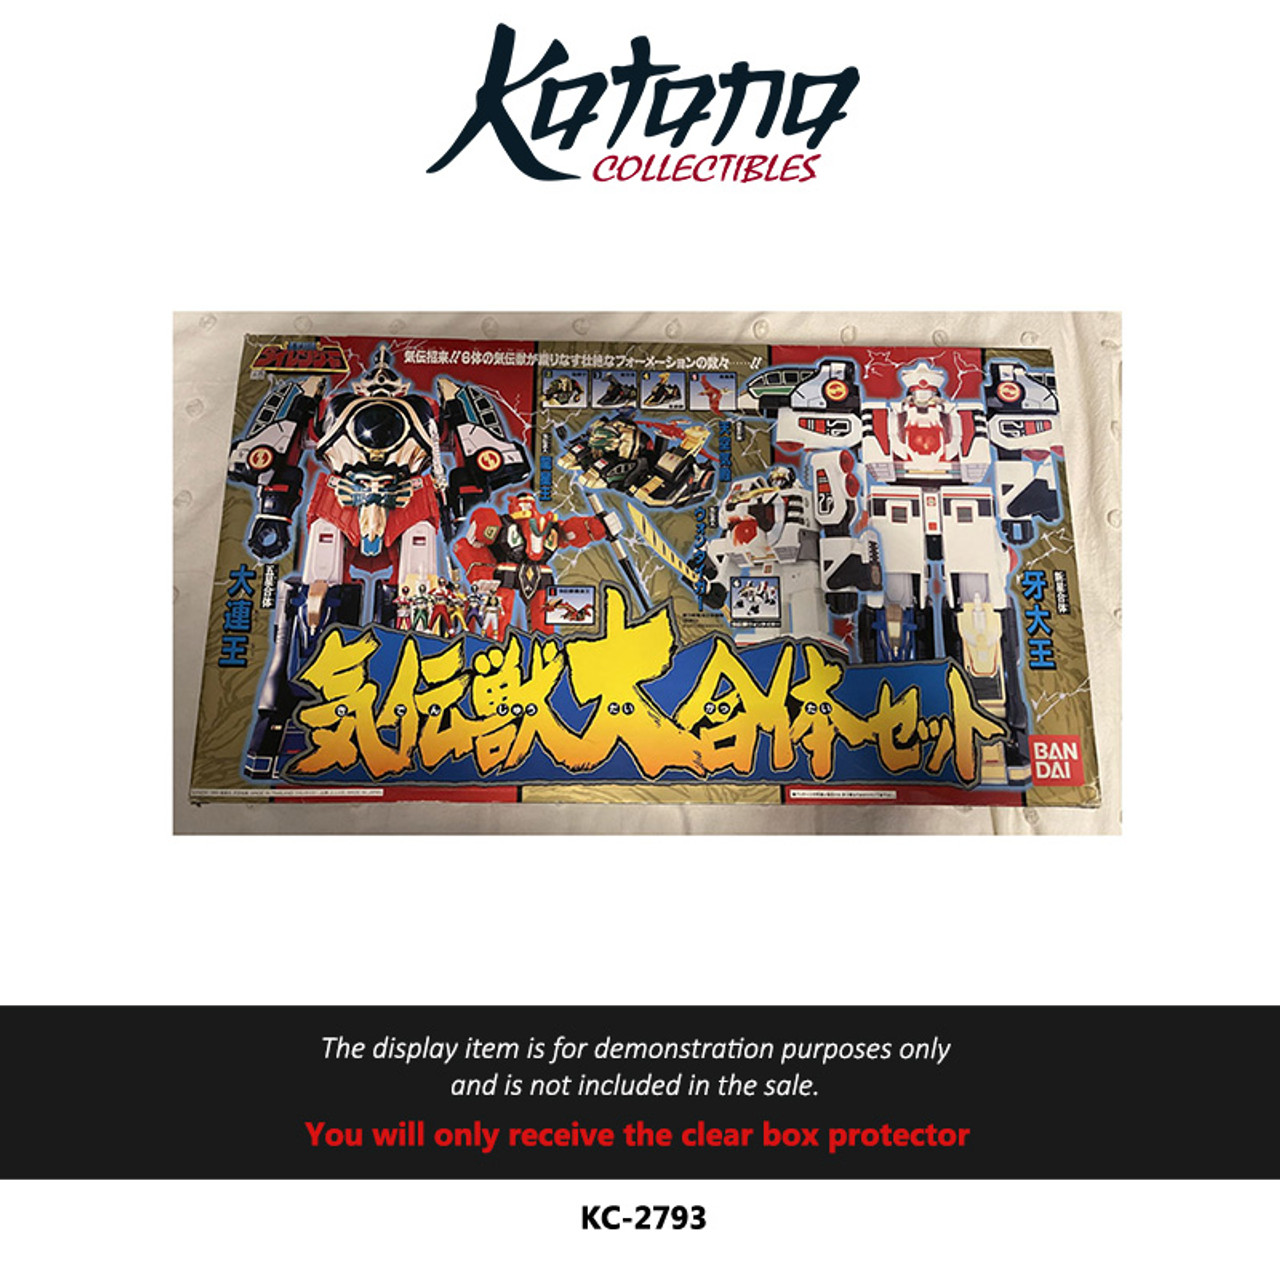 Katana Collectibles Protector For Dairanger KibaDaiOh Gift Set with Figures